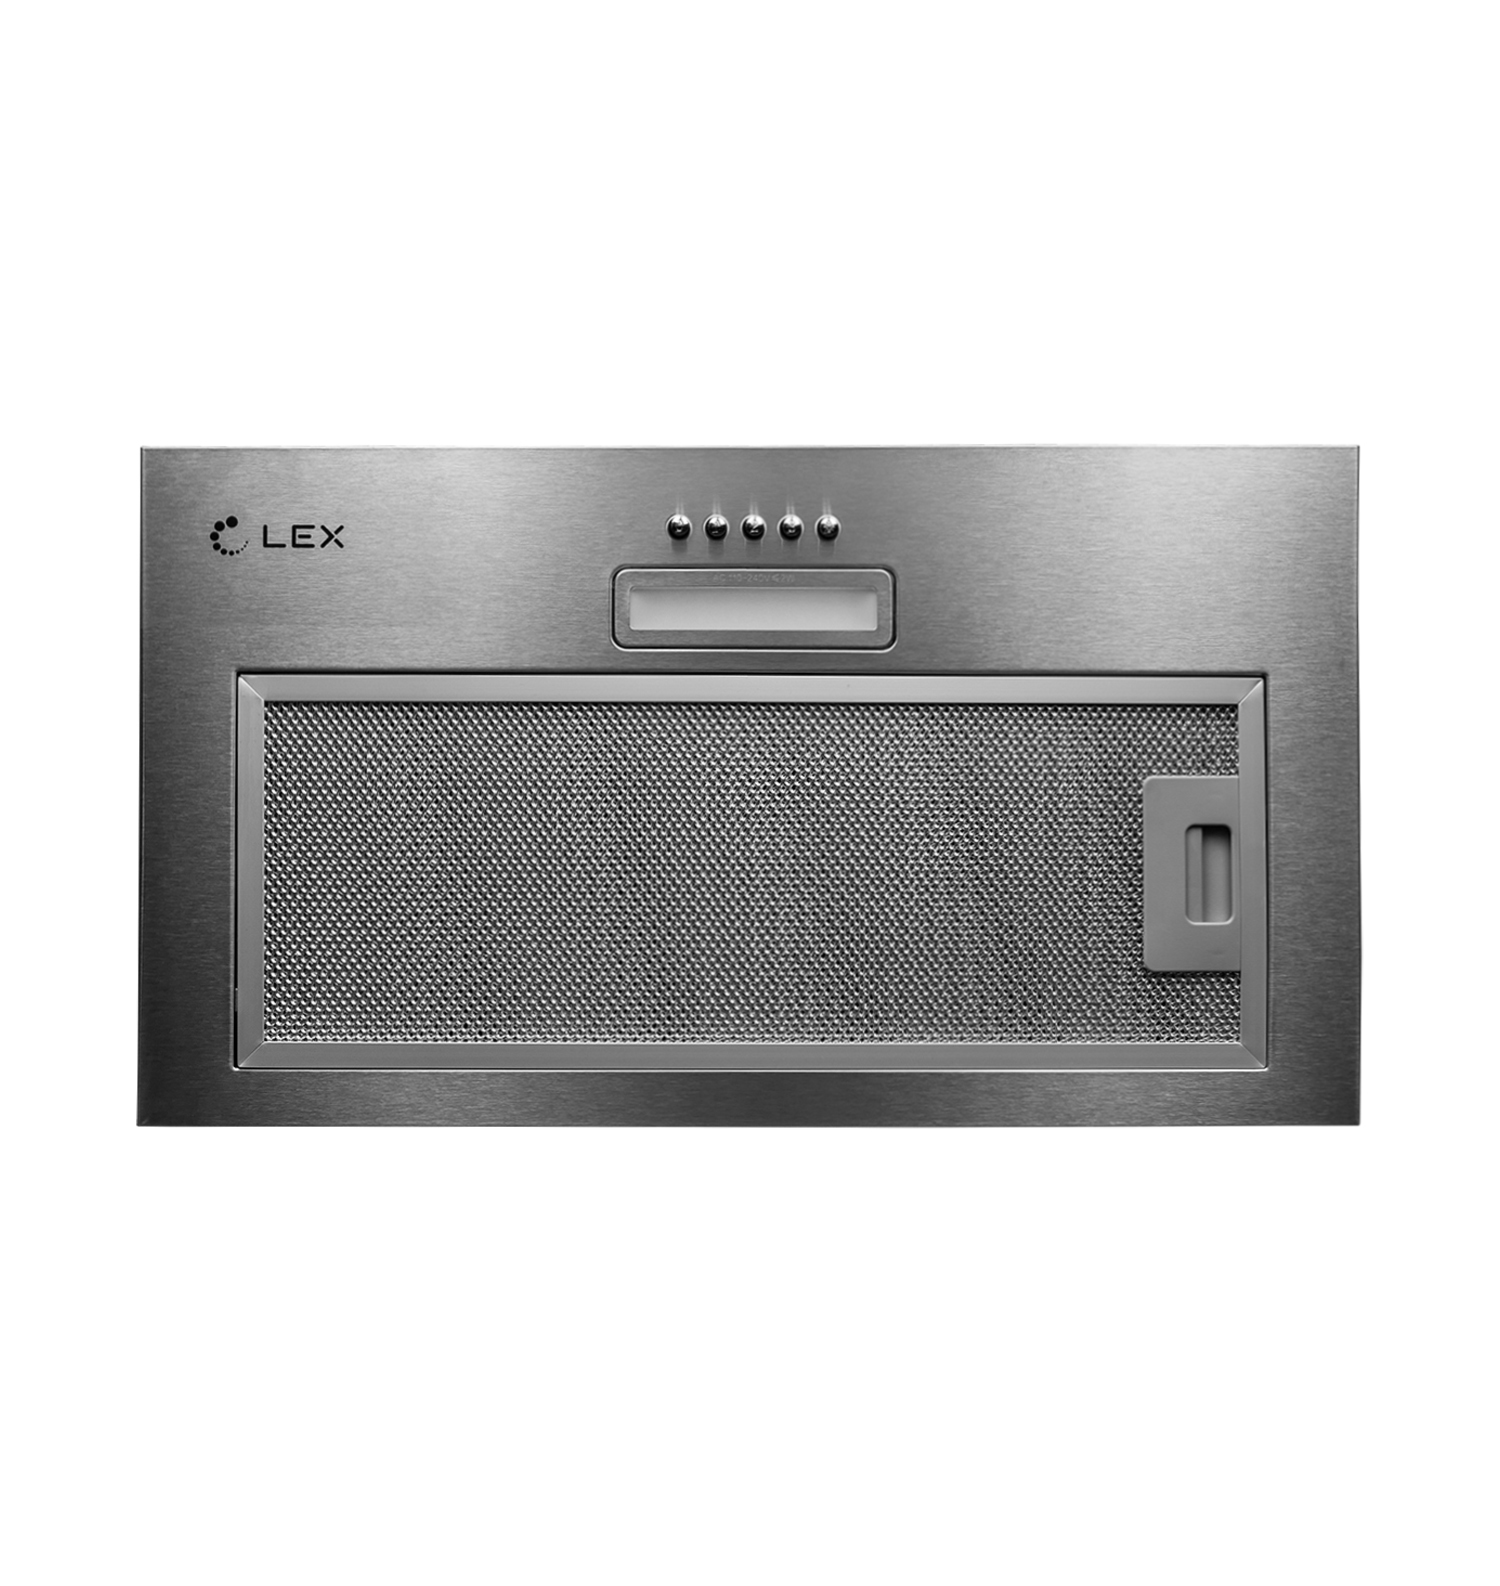 Кухонная вытяжка встраиваемая Lex GS Bloc Light 60 см серая (CHTI000328) кухонная вытяжка встраиваемая lex gs bloc light 60 см серая chti000328